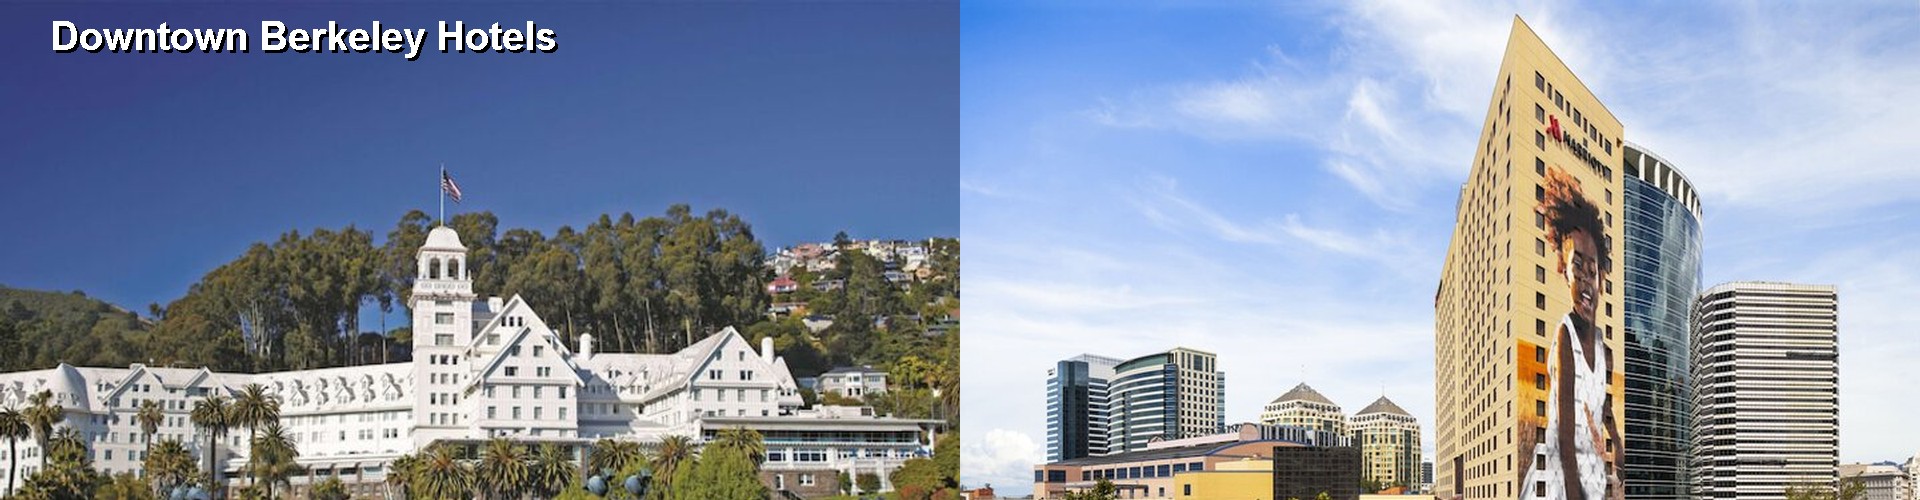 3 Best Hotels near Downtown Berkeley